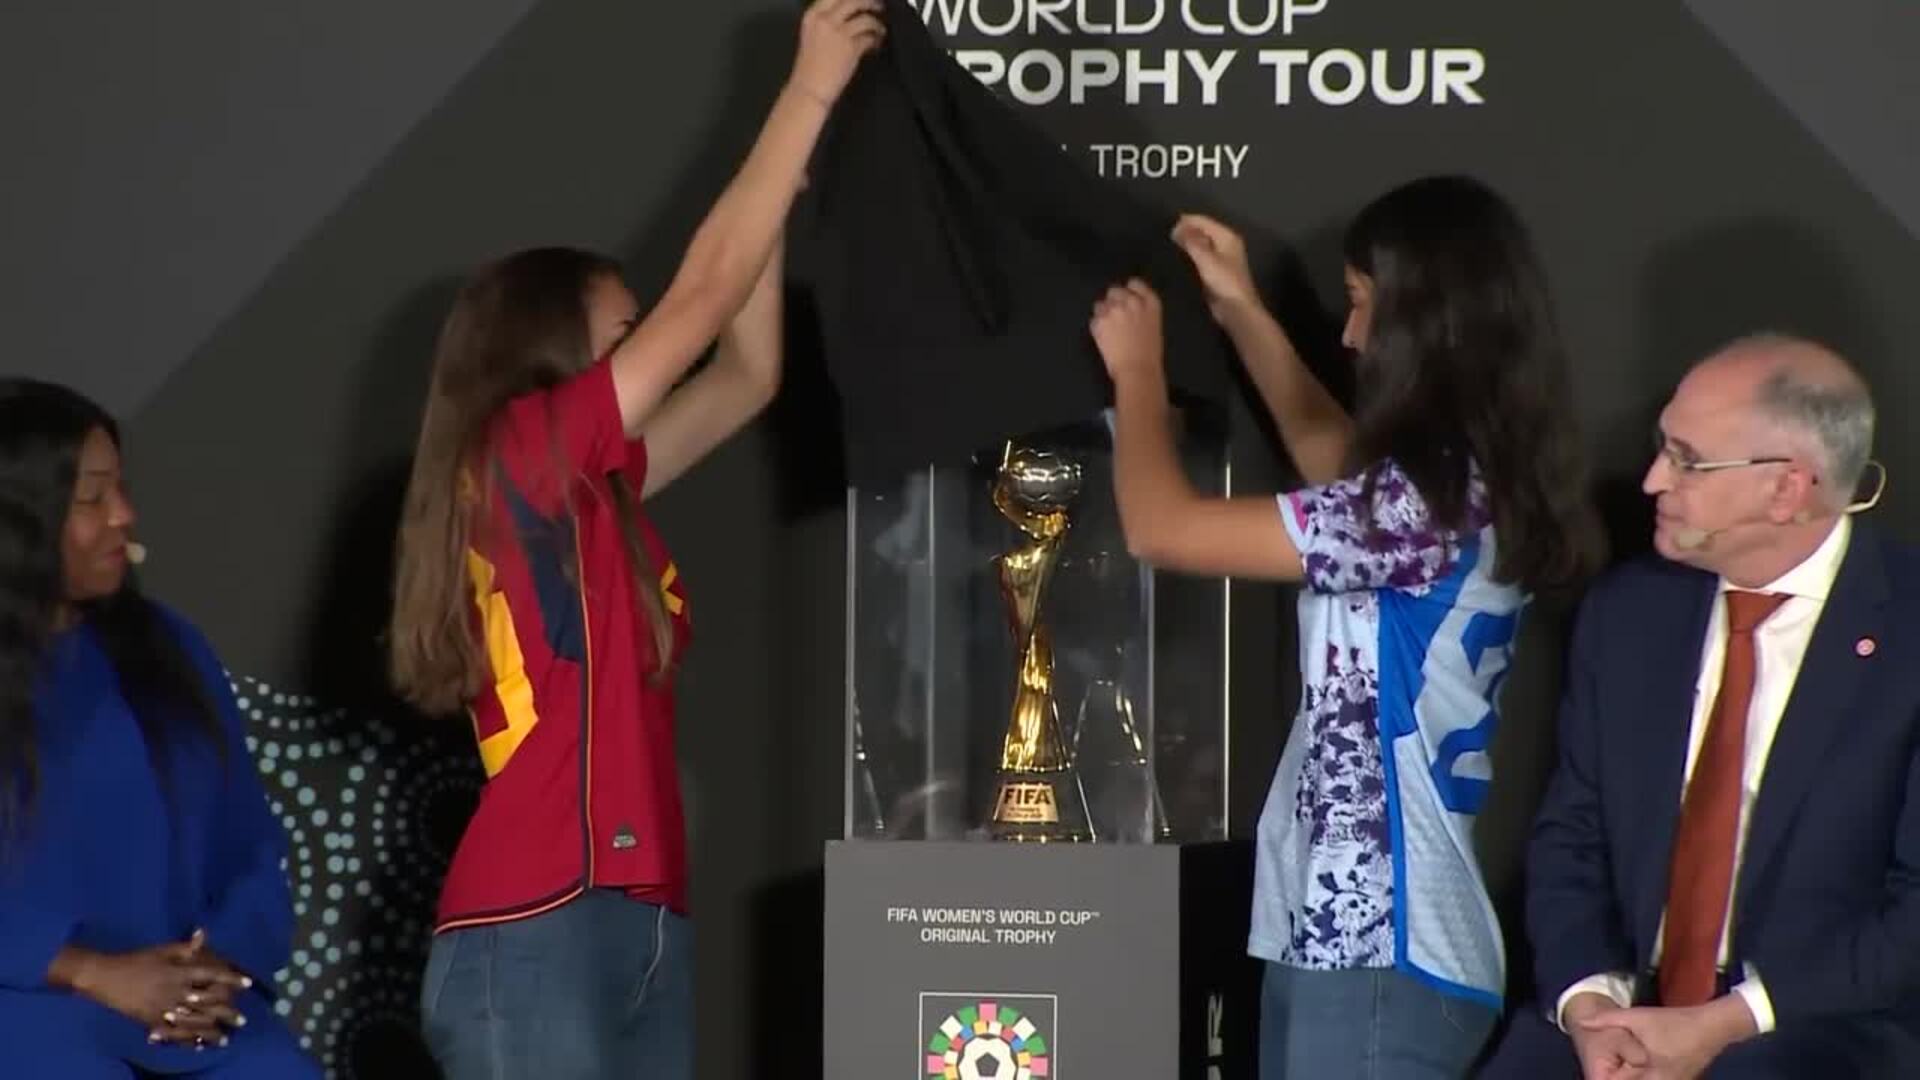 Inma Gabarro y Marina Artero descubren el trofeo de la Copa del Mundo femenino